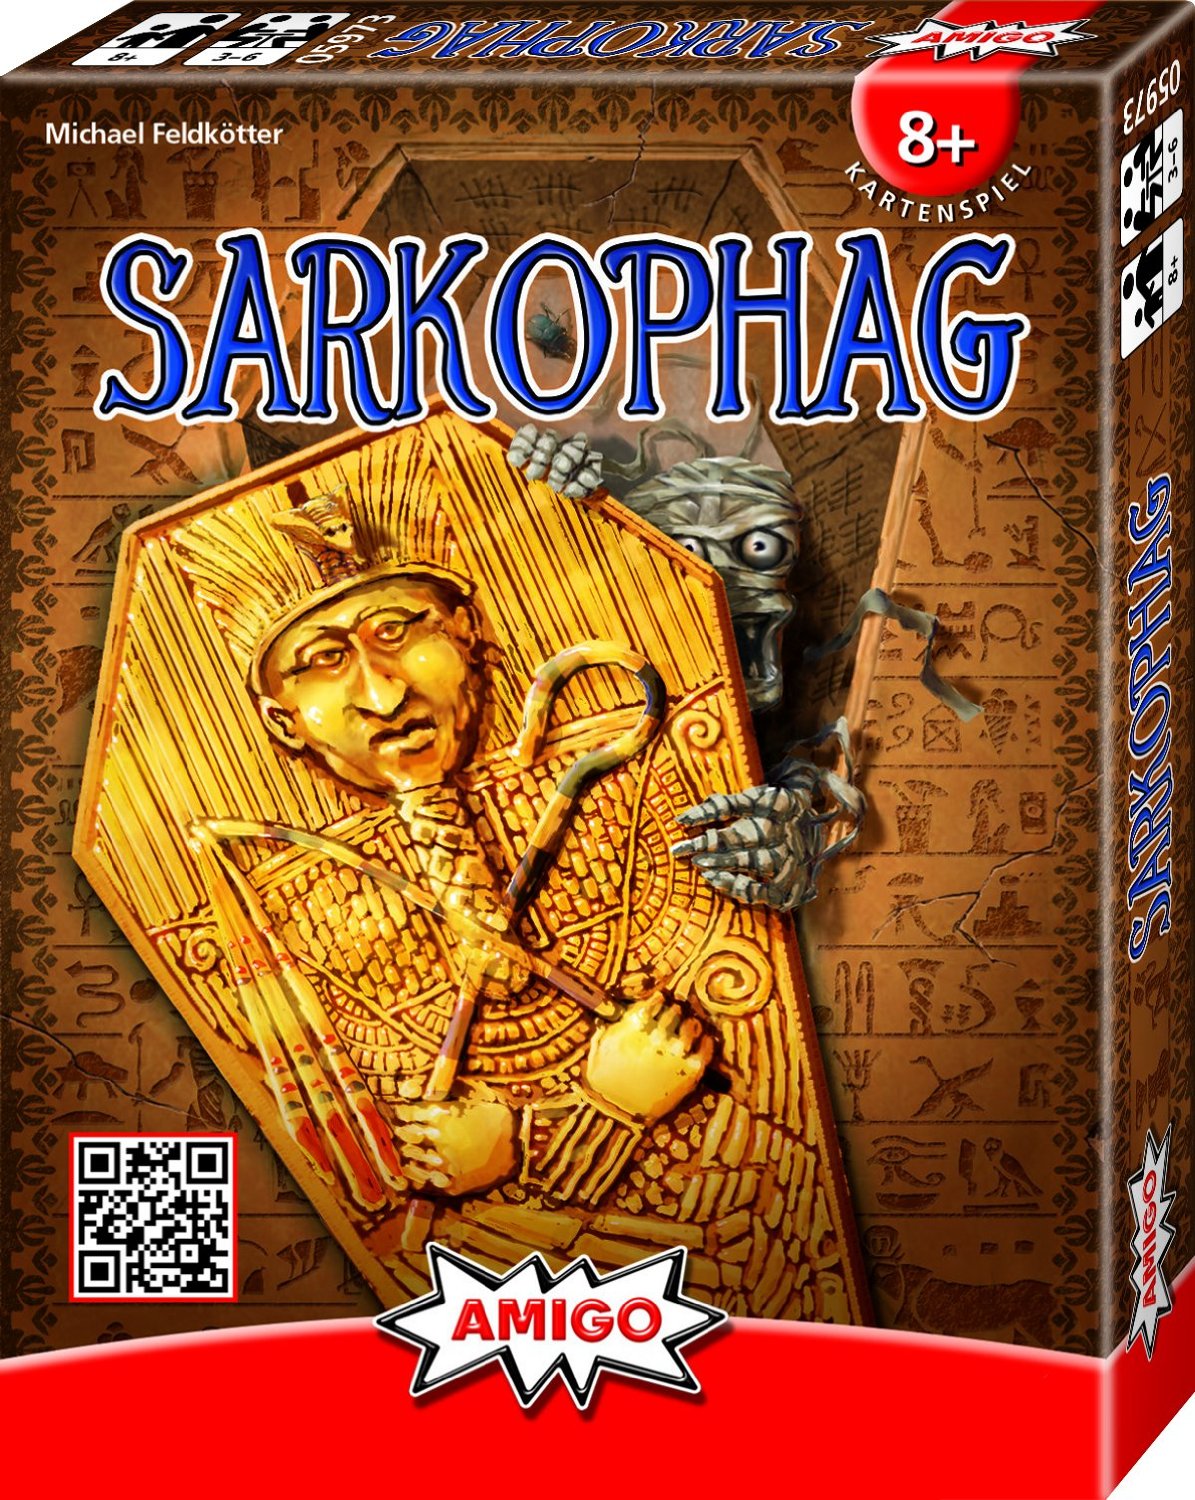 Sarkophag - Kartenspiel, Stichspiel von Michael Feldk�tter